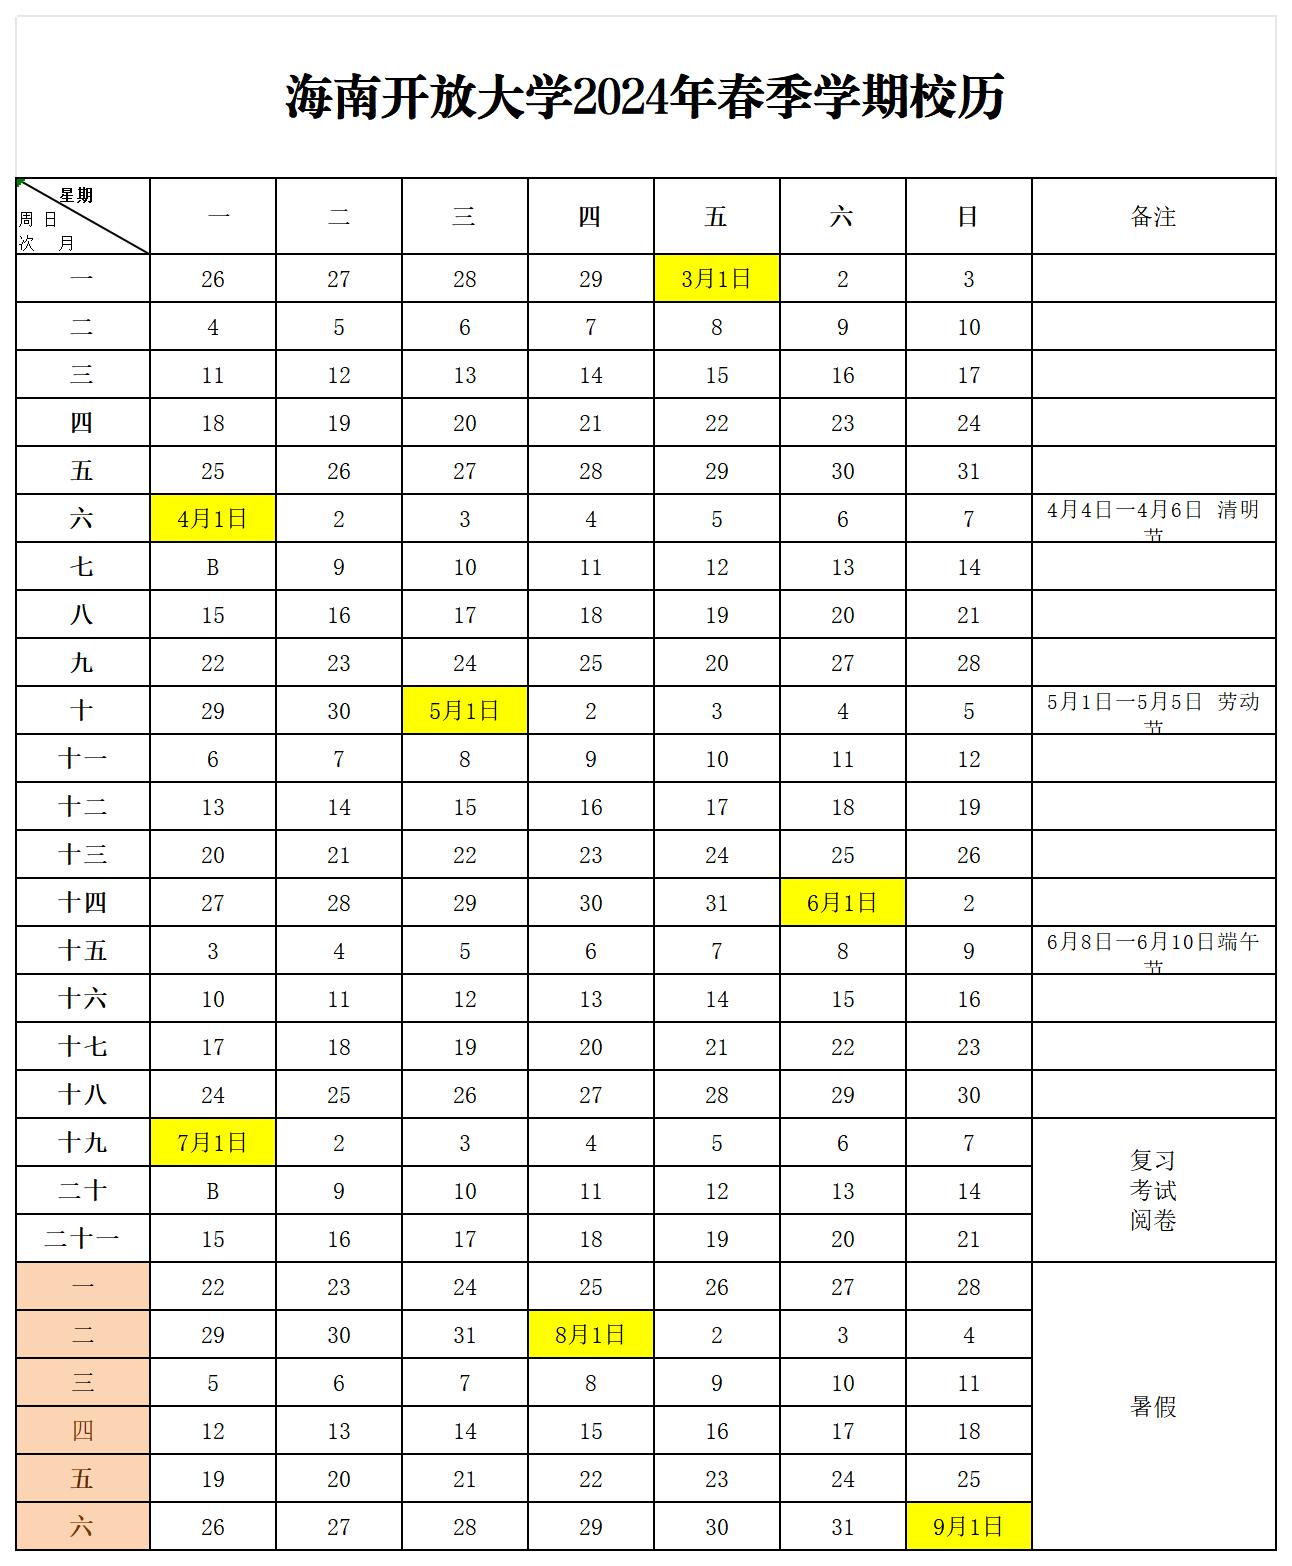 星空体育2024年春季学期校历_Sheet1.jpg